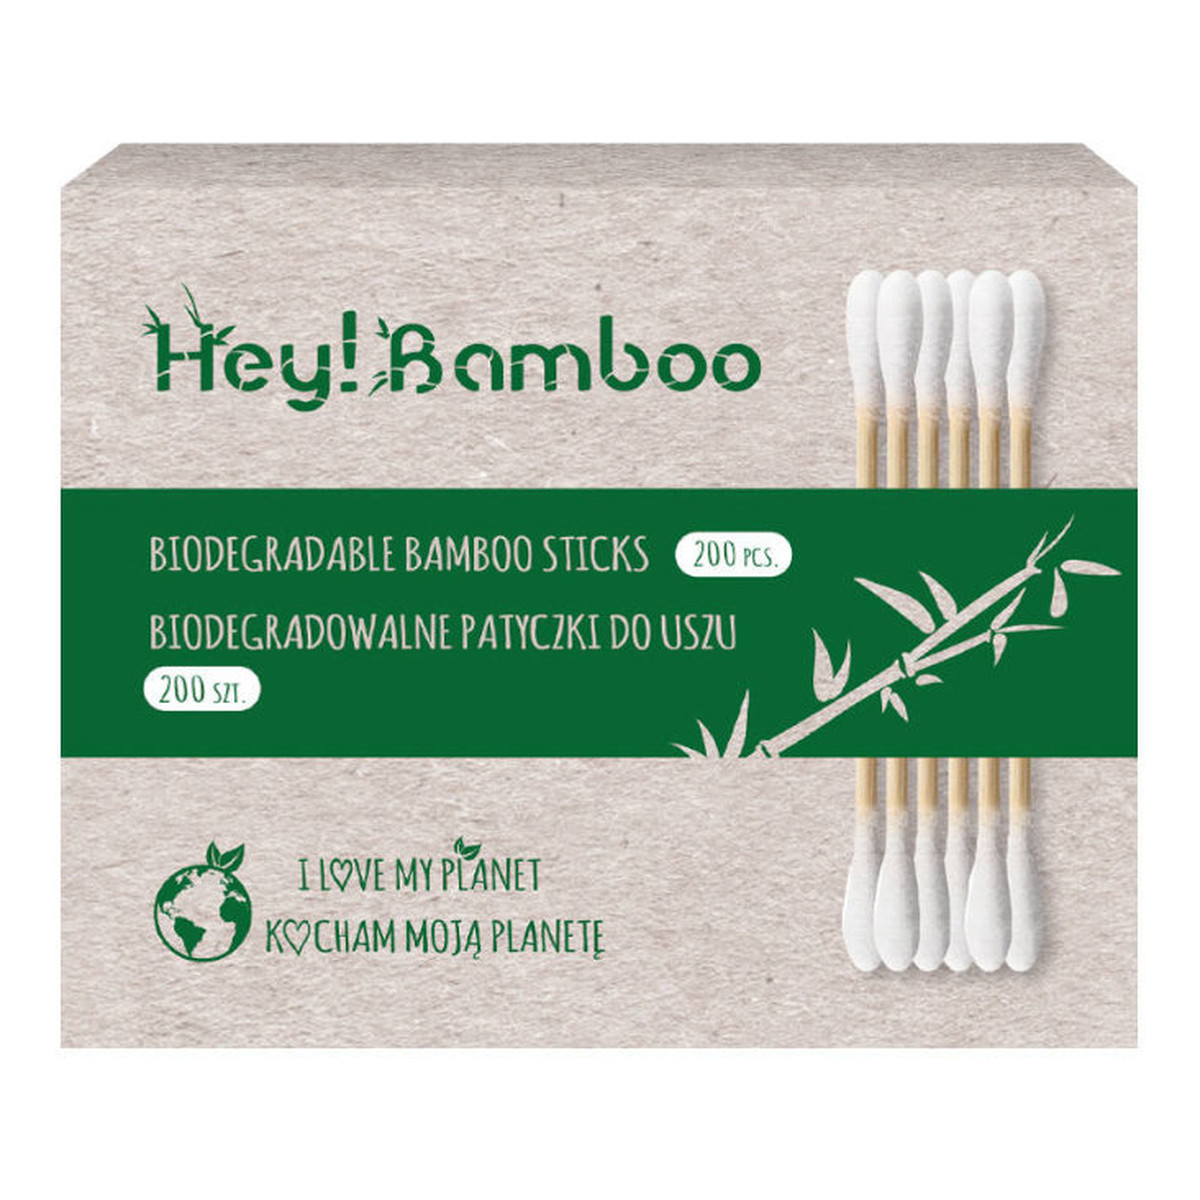 Hej Bamboo Biodegradowalne patyczki kosmetyczne 200 sztuk